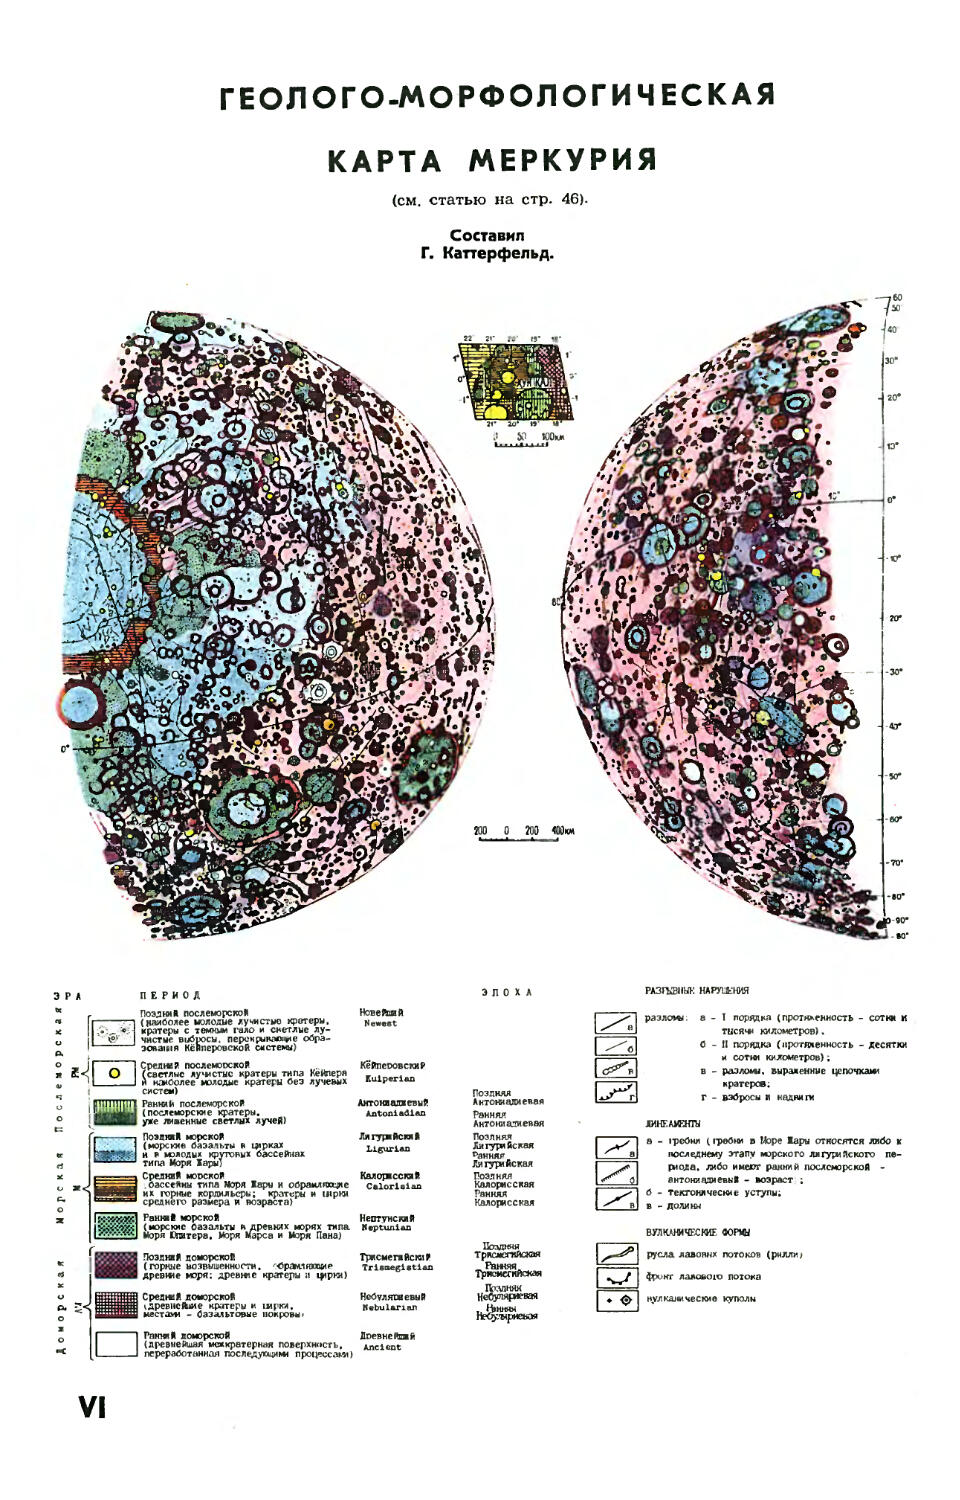 Геолого-морфологические карты Меркурия, составленные Г. Каттерфельдом.